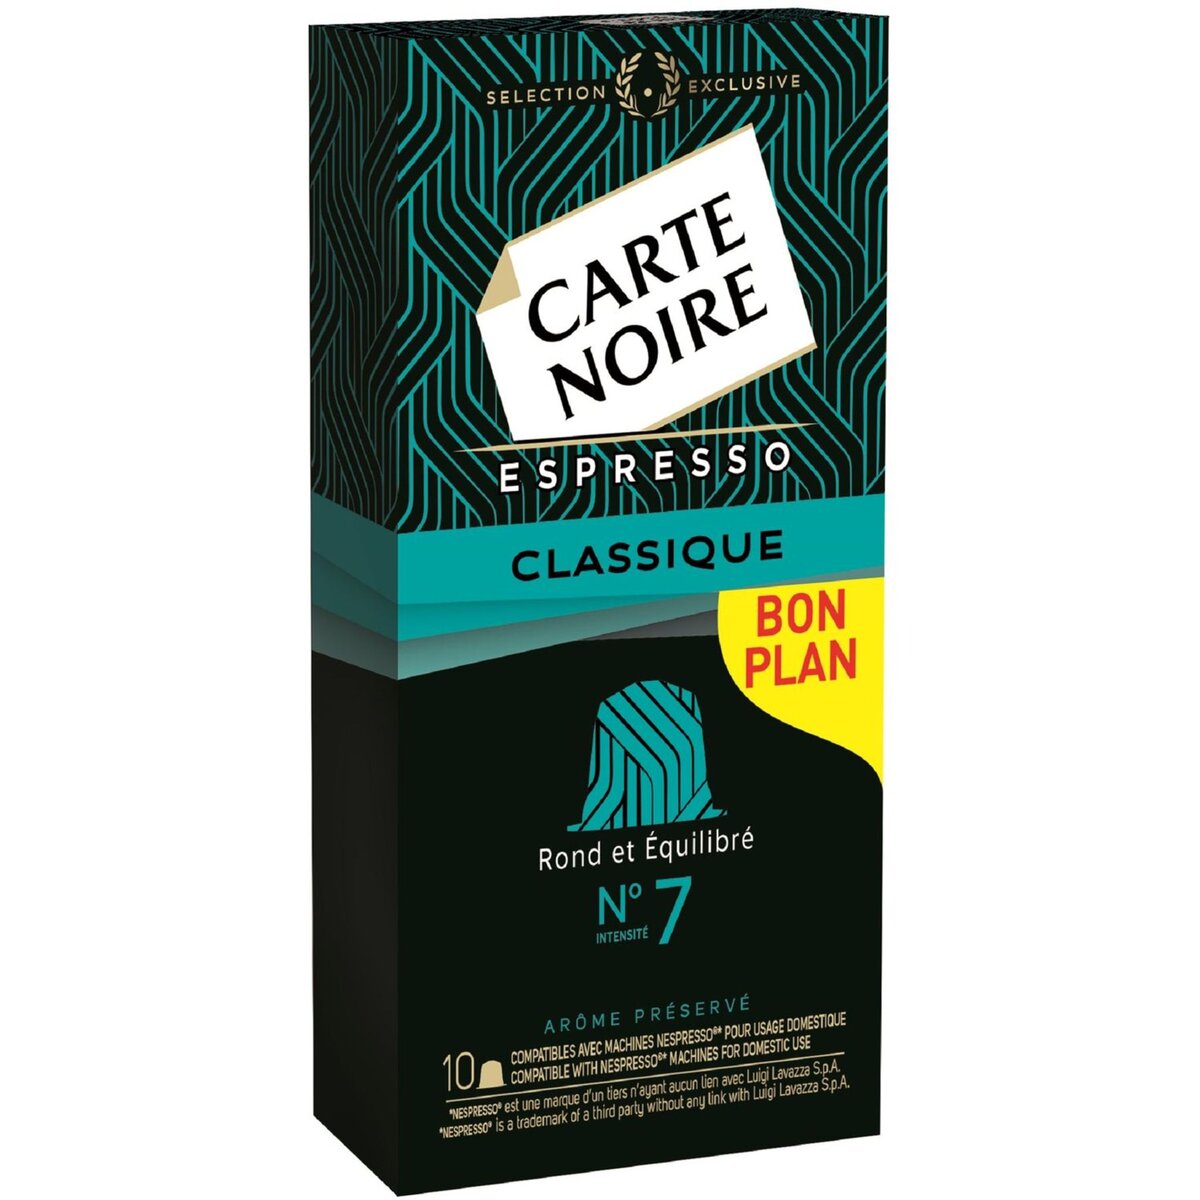 CARTE NOIRE Carte Noire espresso classique capsule n°7 x10 -53g